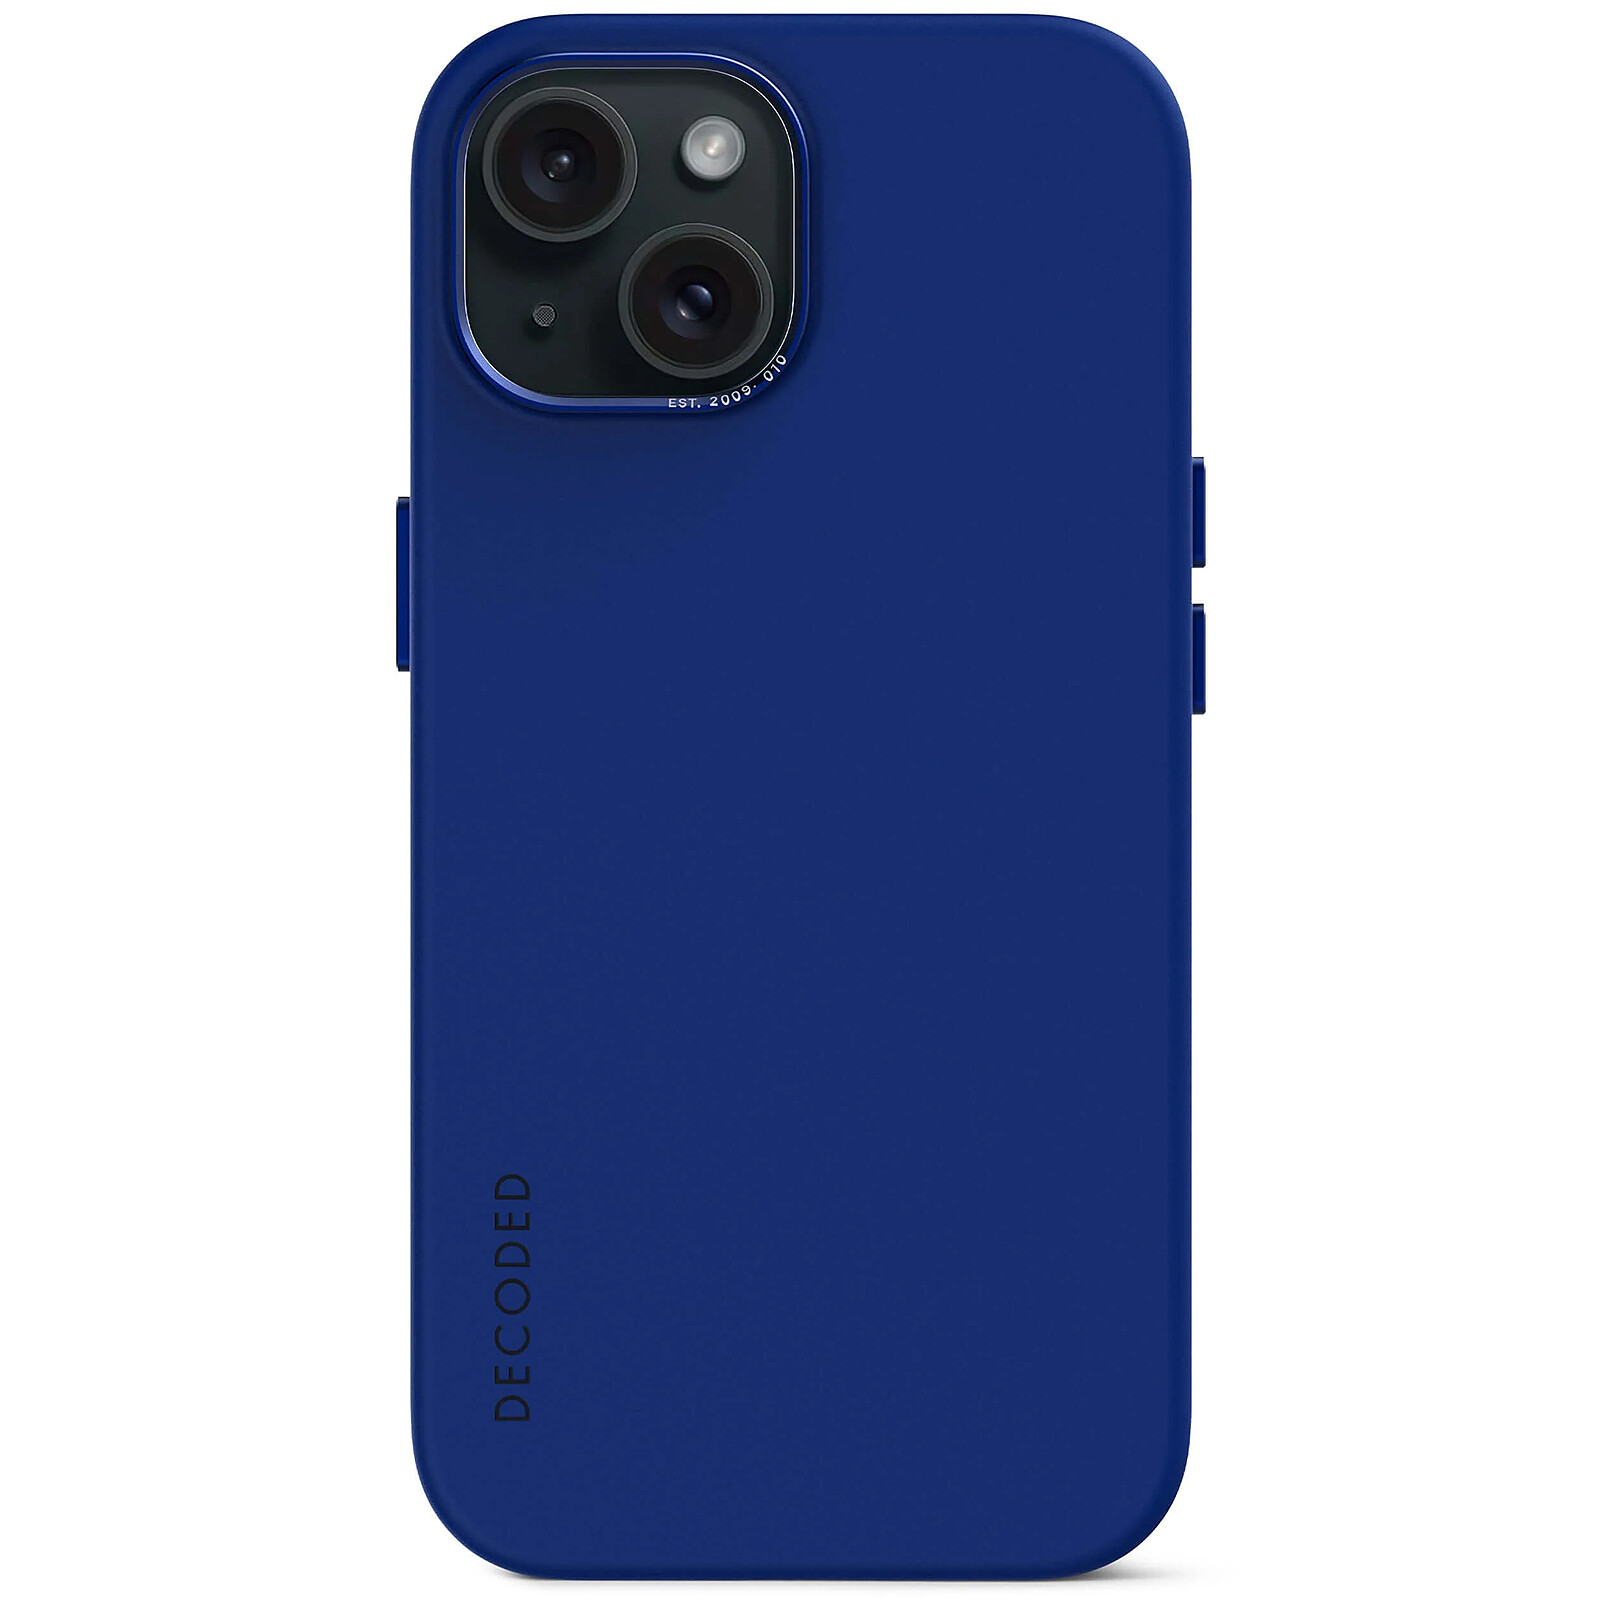 Funda transparente MagSafe iPhone 11 borde de color (azul) - Funda